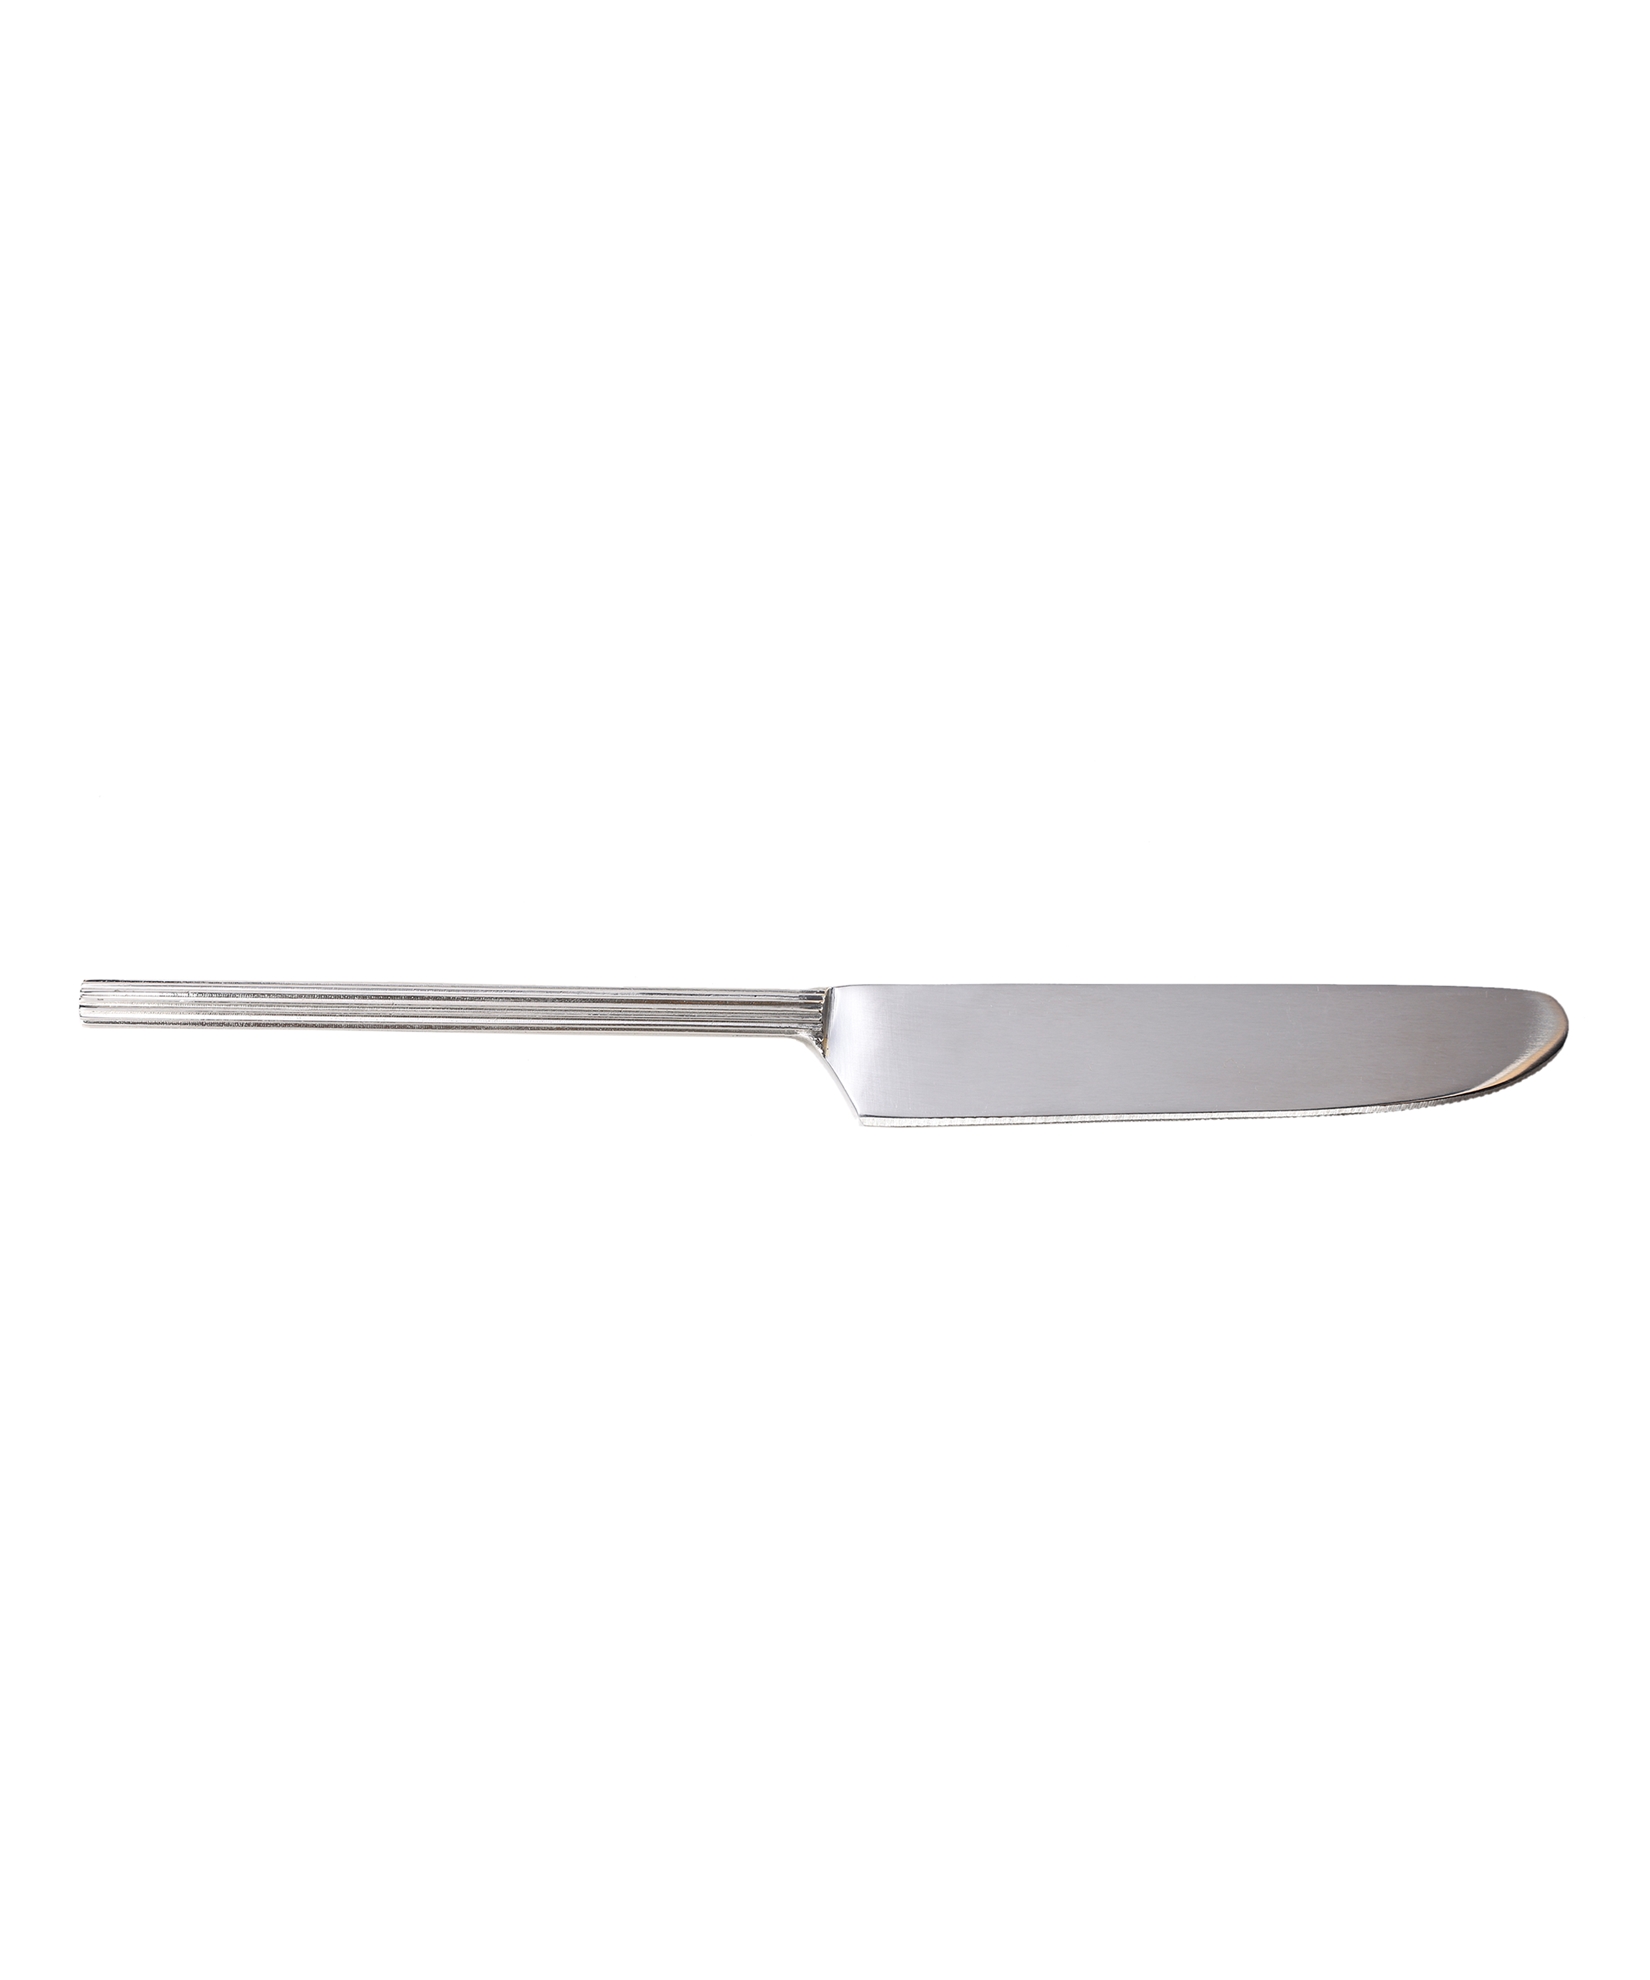 Yemek Bıçağı (23cm)